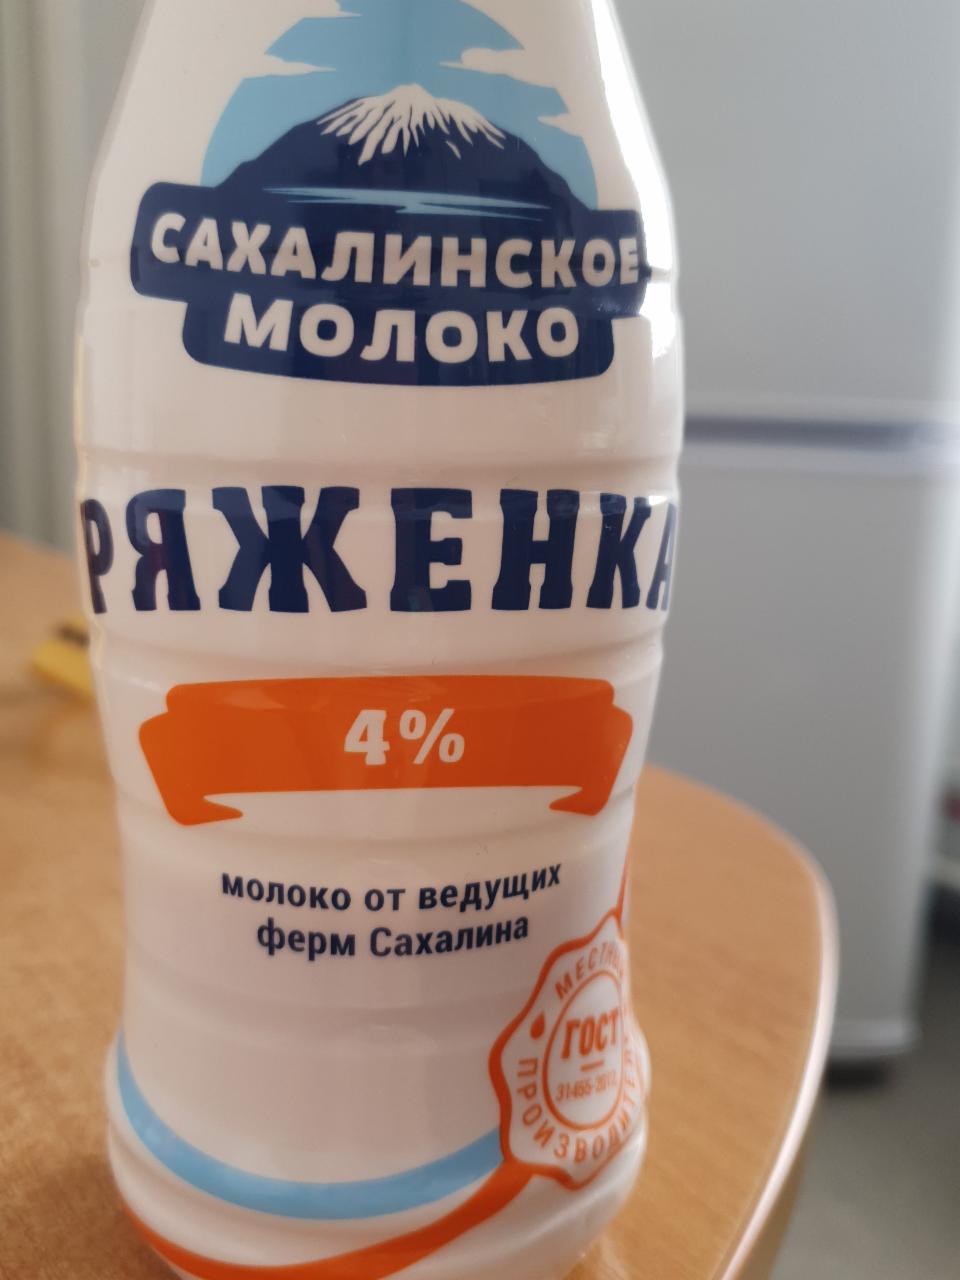 Фото - Ряженка 4% Сахалинское молоко 